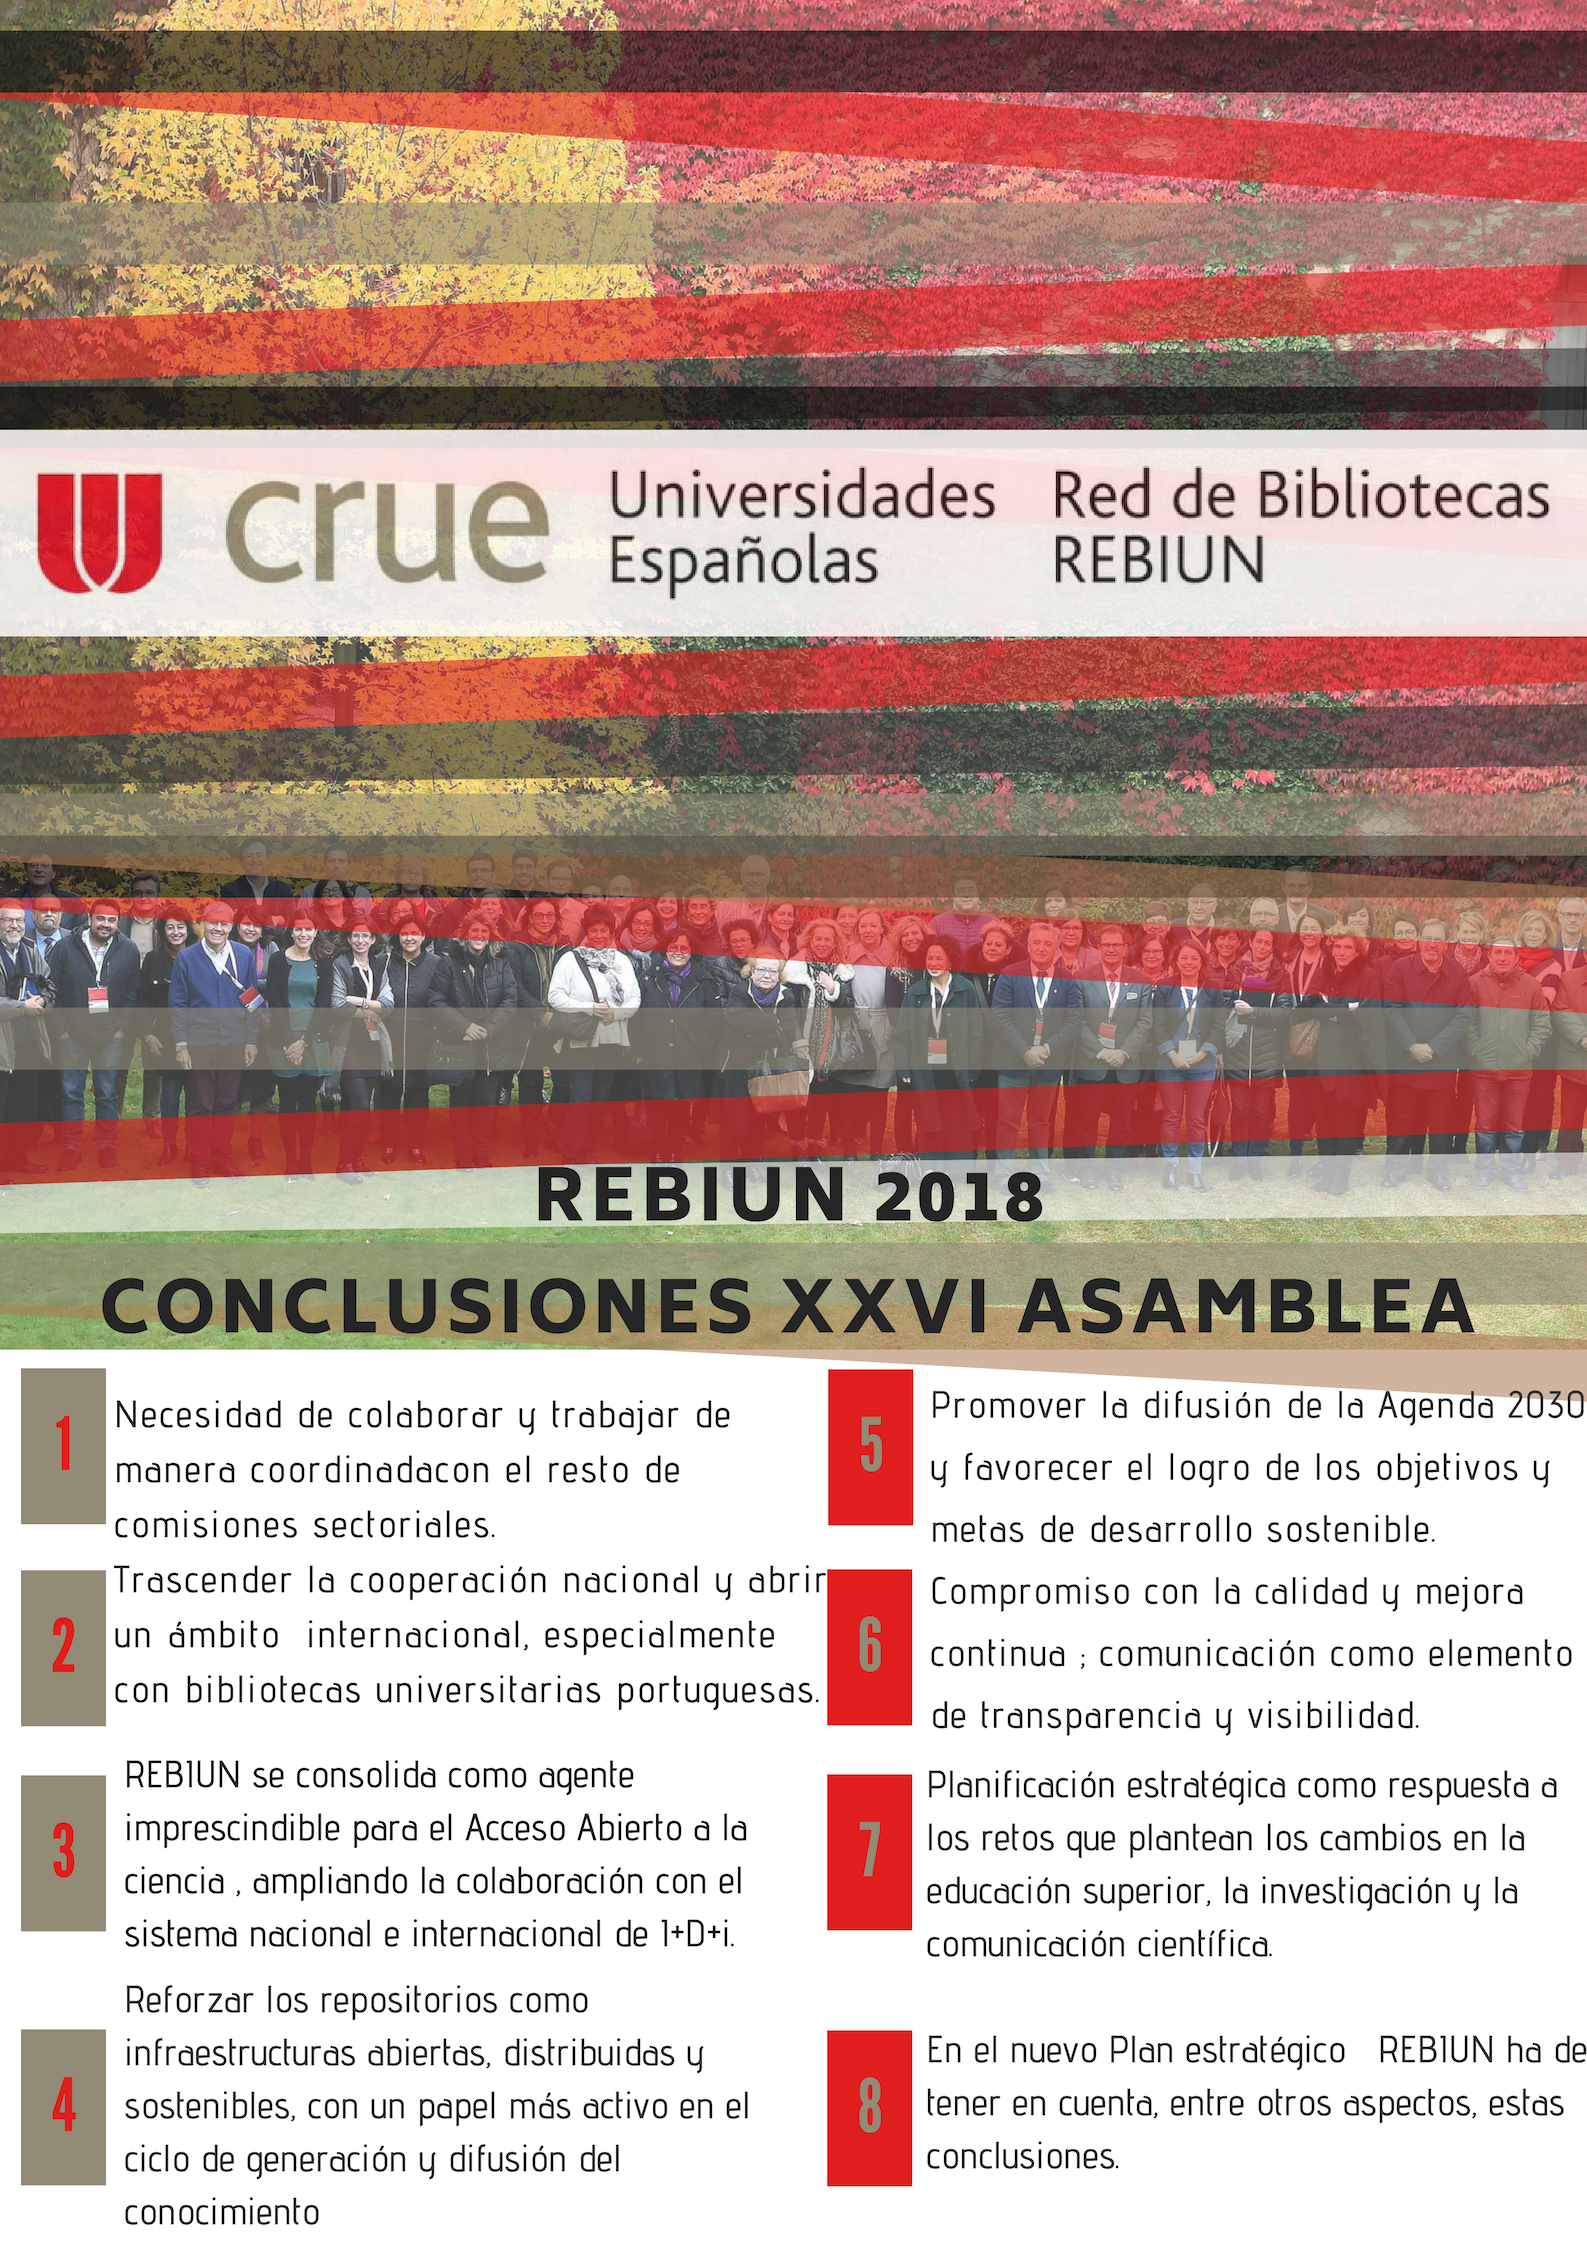 POSTER_Conclusiones_XXVI Asamblea_REBIUN_Salamanca_2018